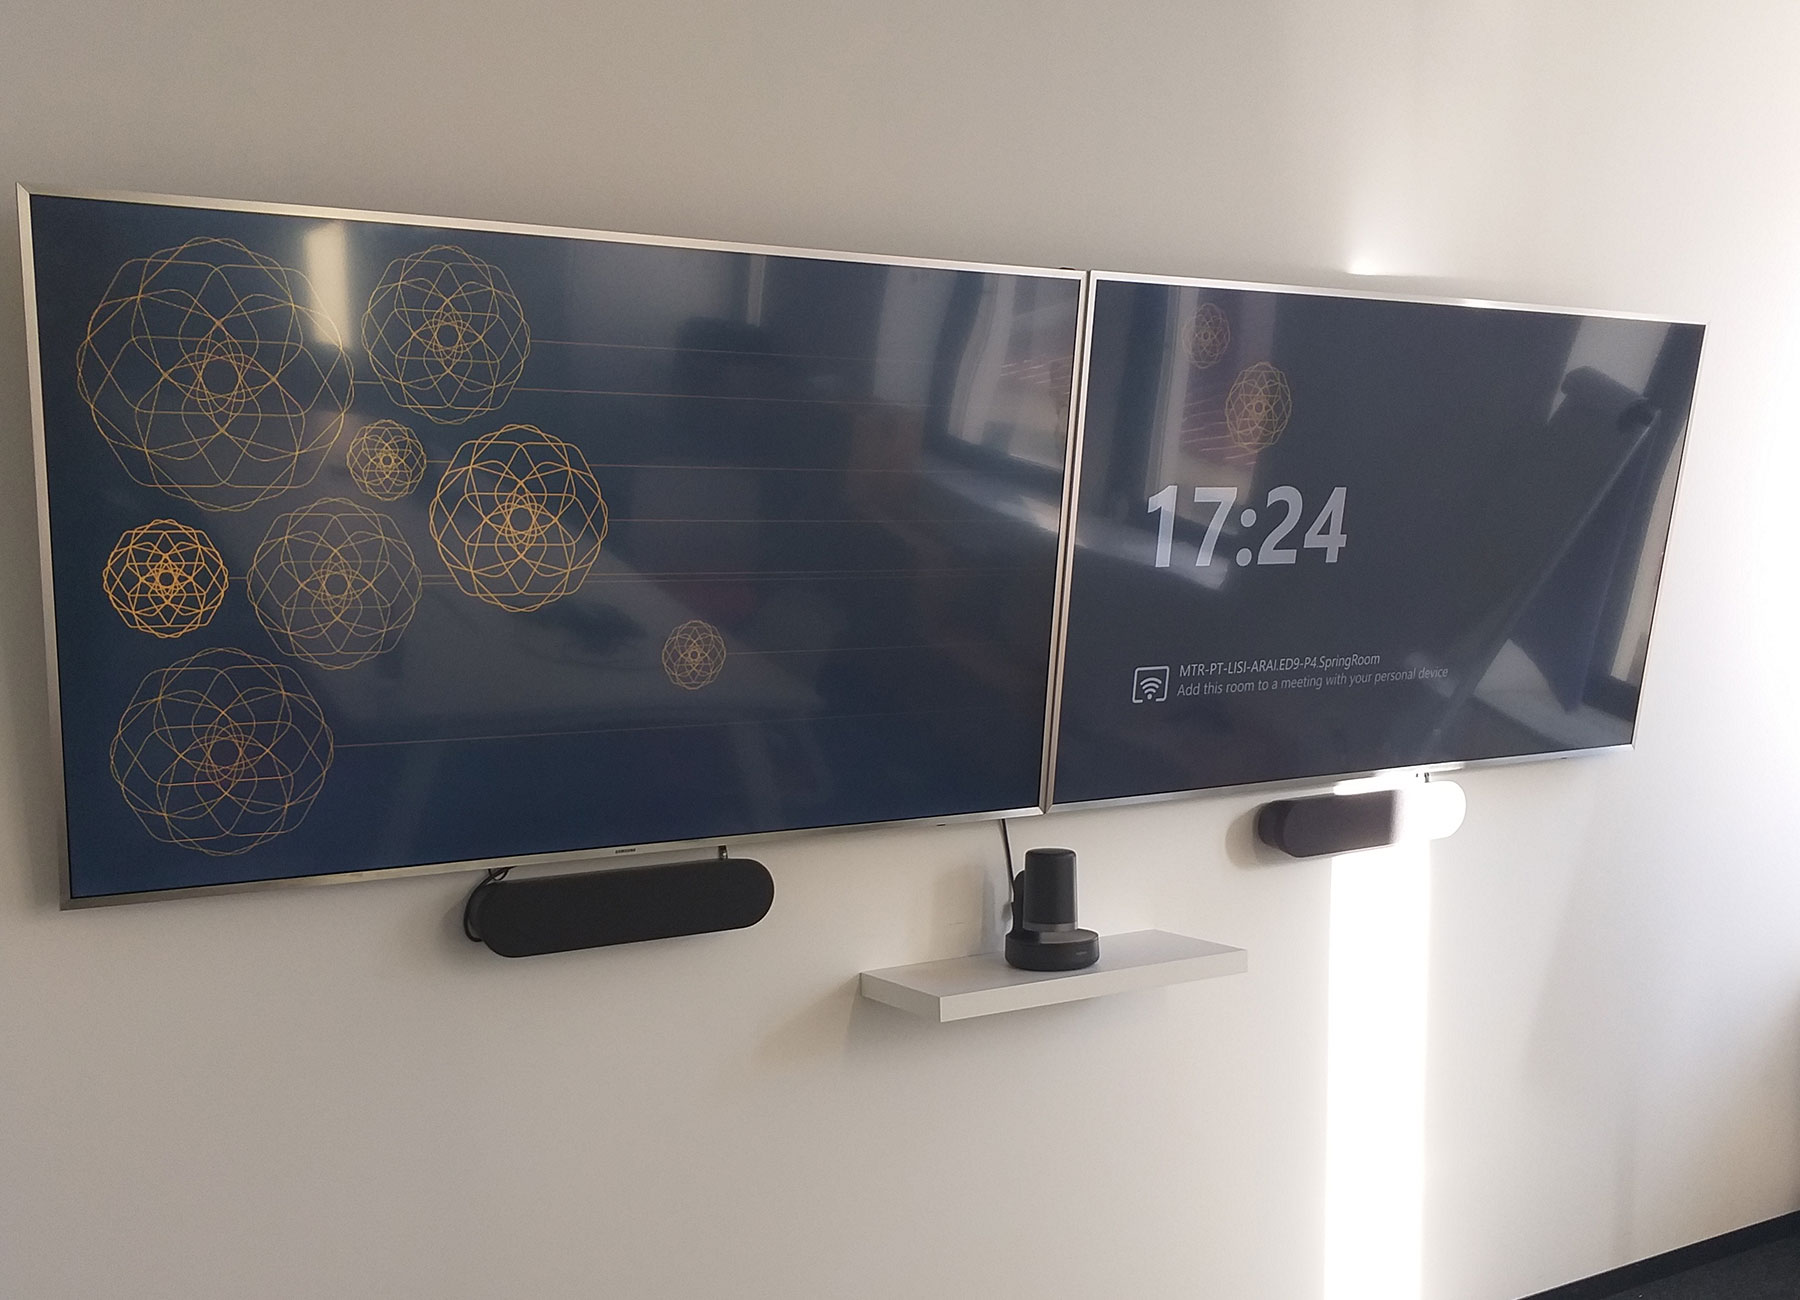 Configurazione per videoconferenze con due monitor